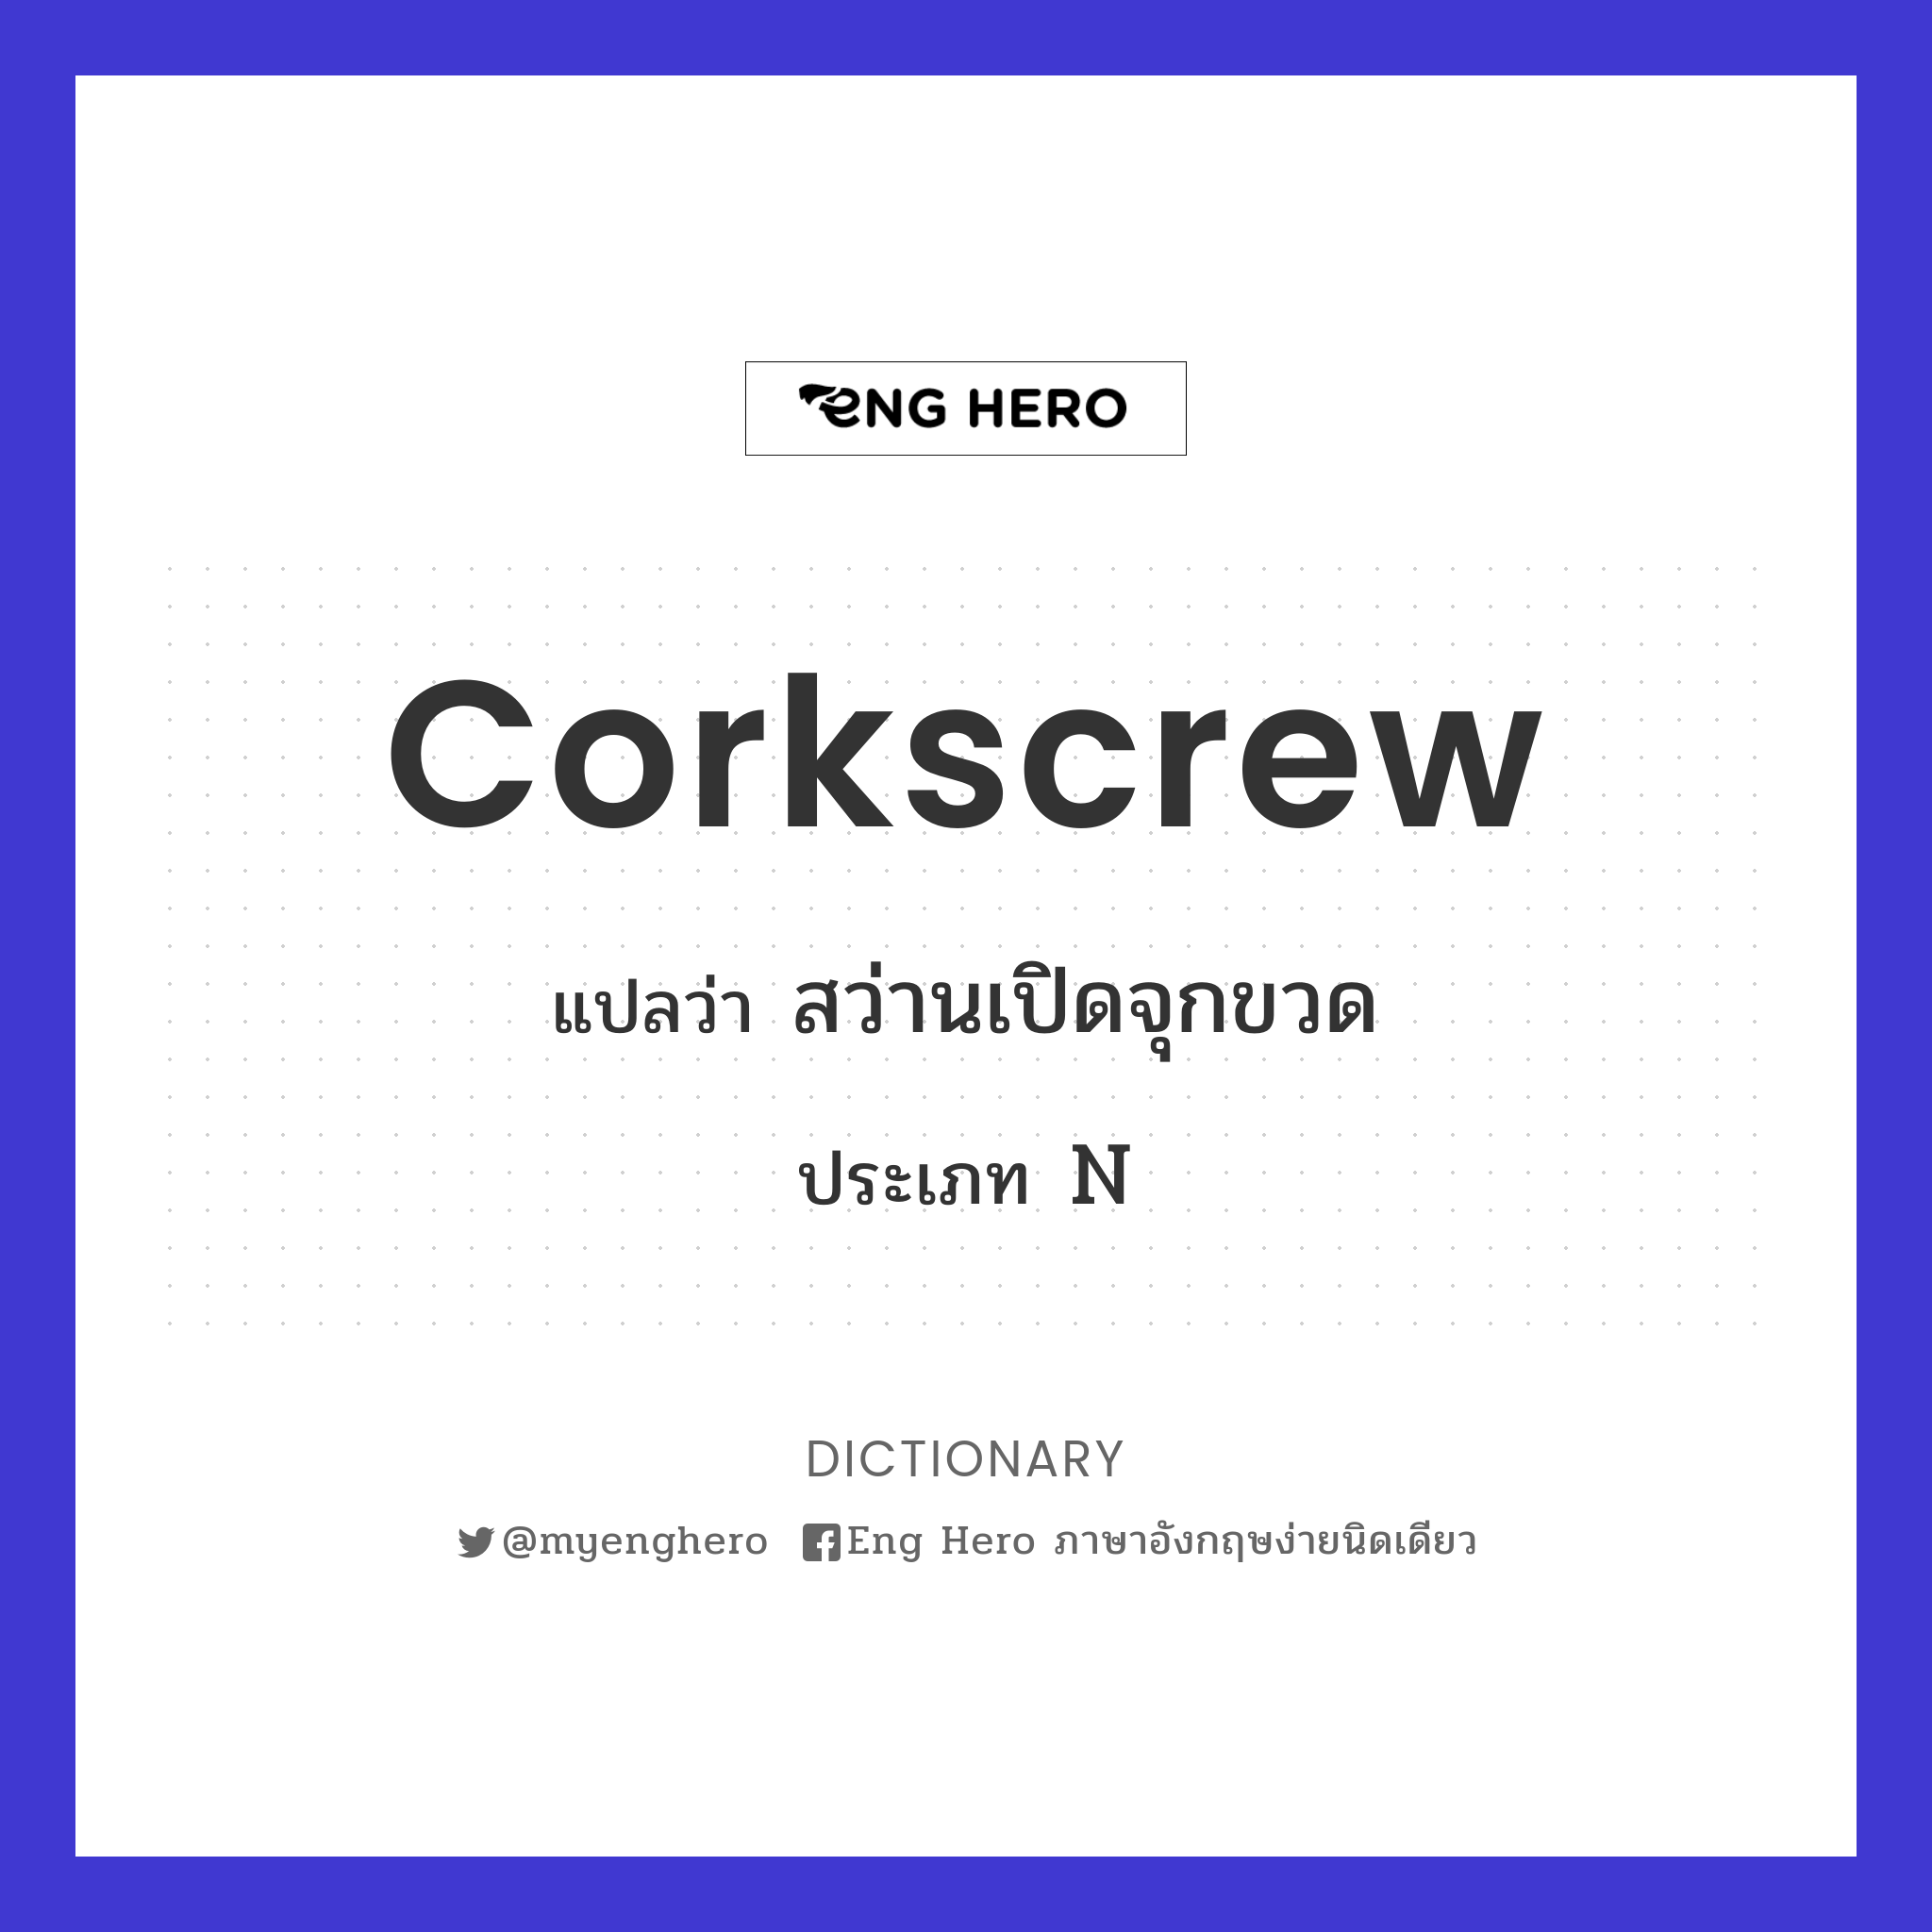 corkscrew